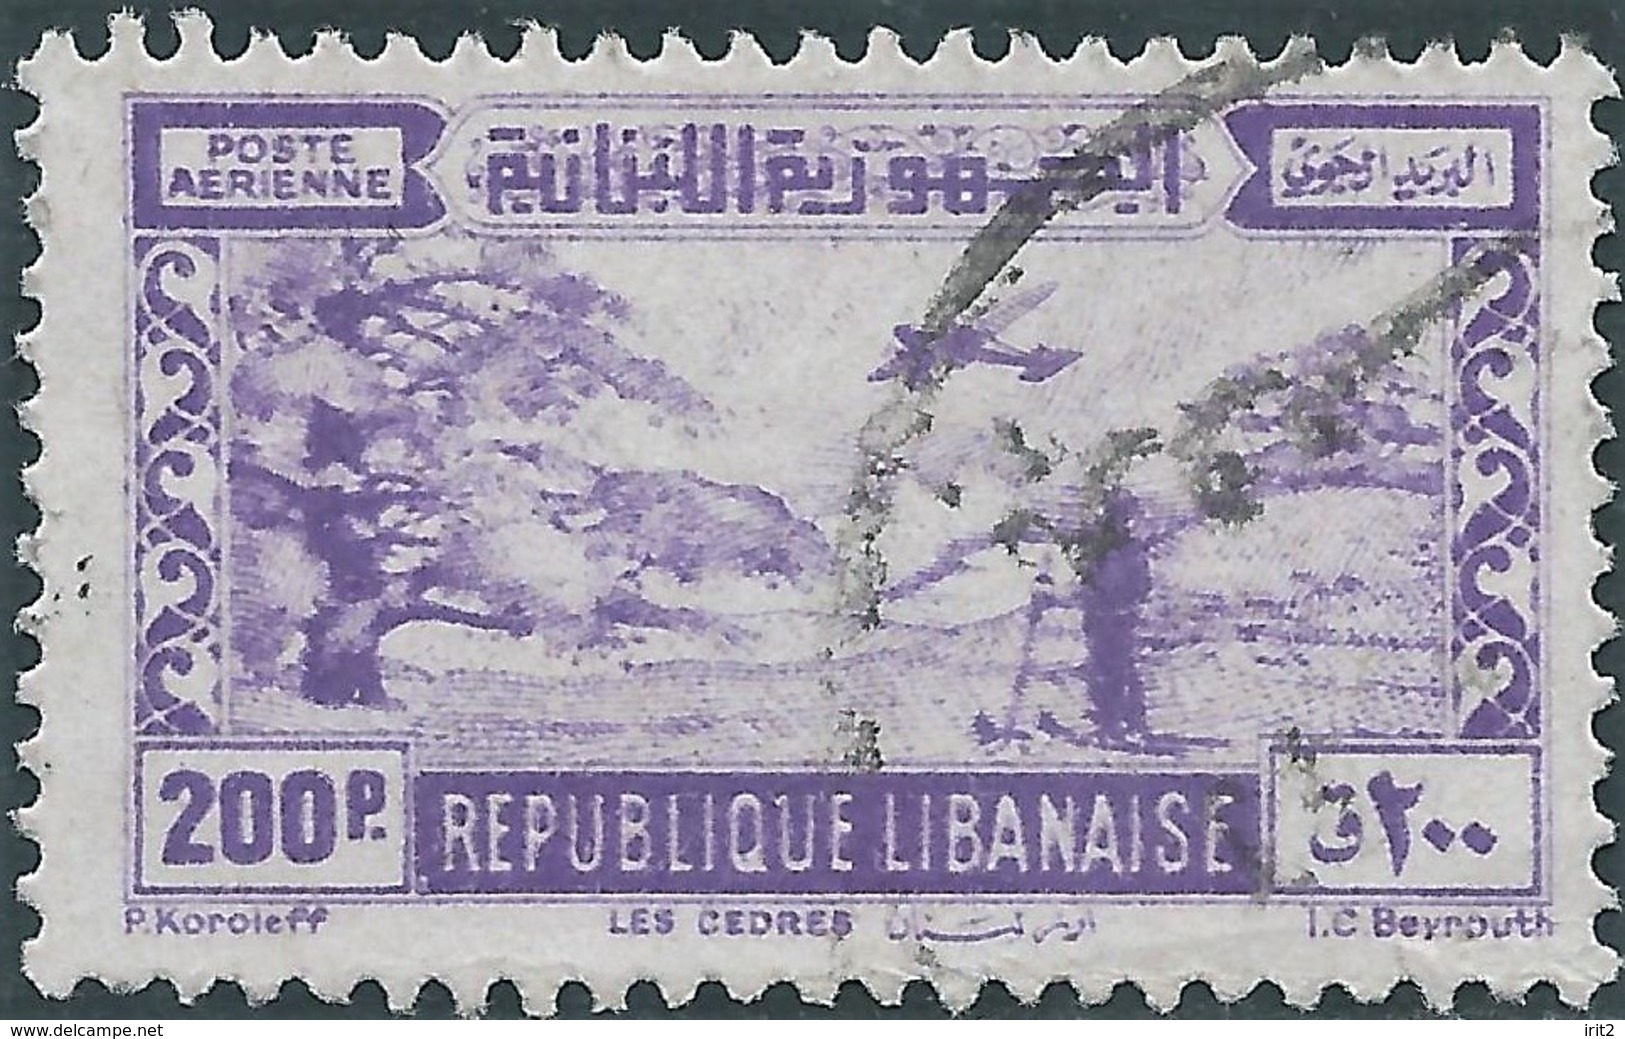 LIBANO Lebanon Liban 1945 - 200Pia,Used - Lebanon